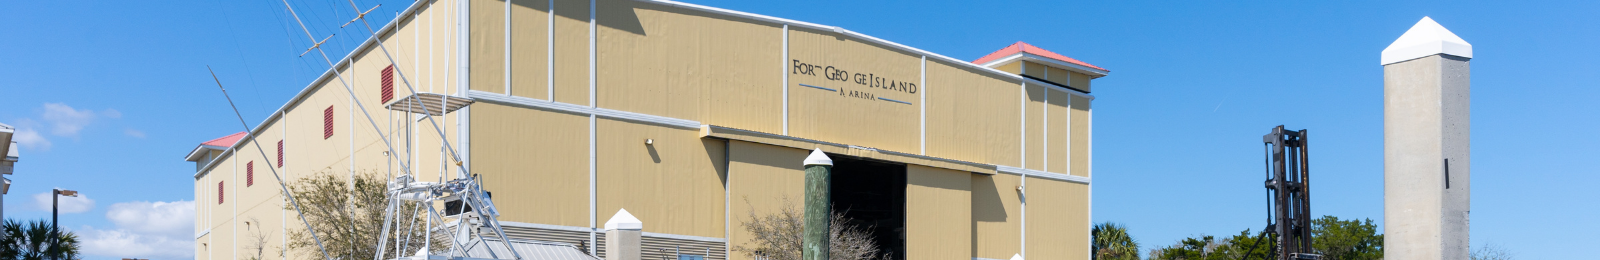 Fort George Island Marina – Jacksonville, FL